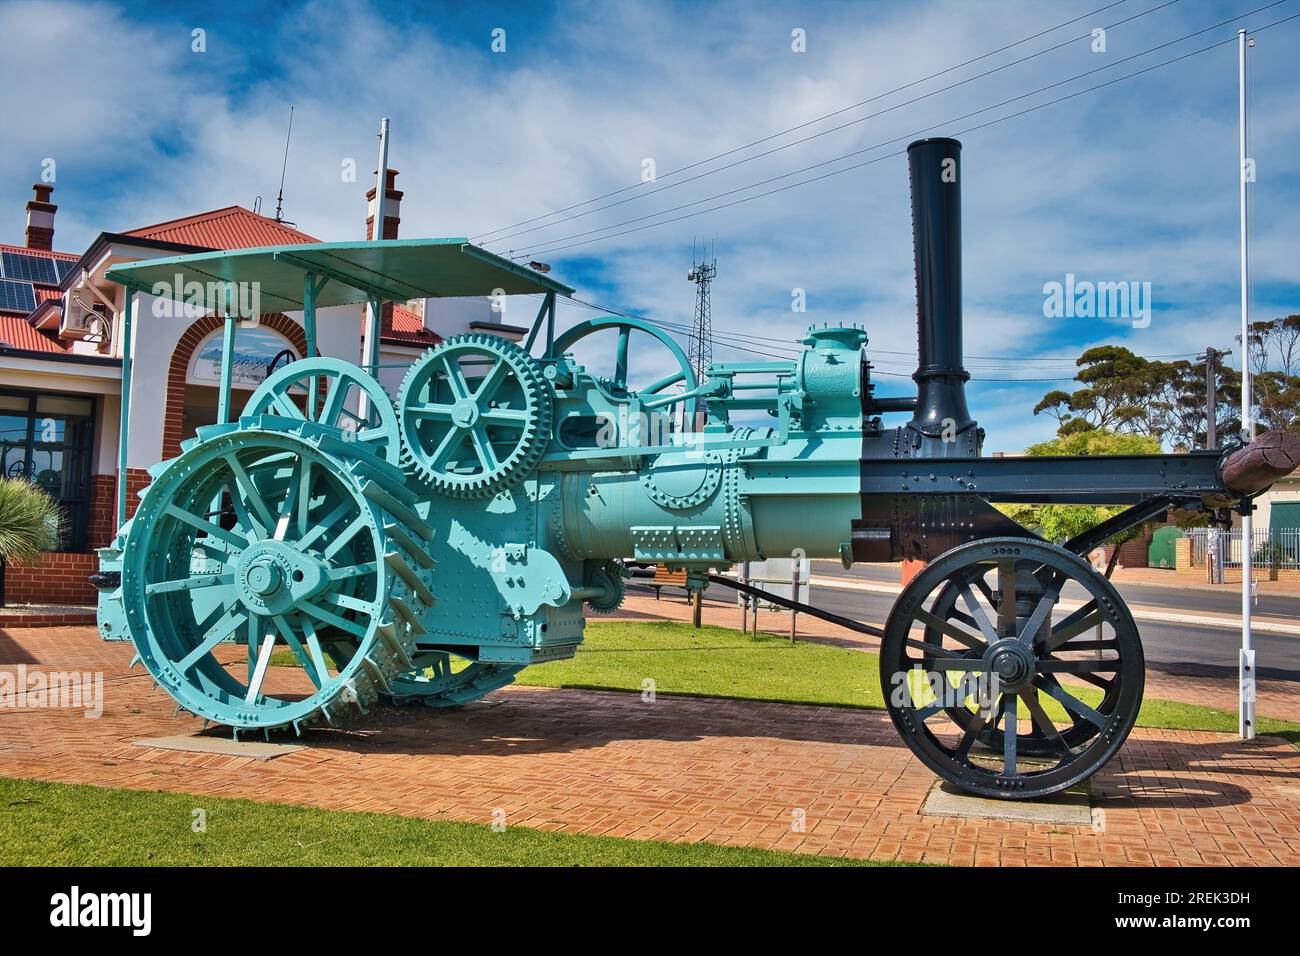 Moteur de labourage à vapeur restauré, construit en 1889. Utilisé pour défricher des terres dans le comté de Gnowangerup, dans le sud de l'Australie occidentale Banque D'Images